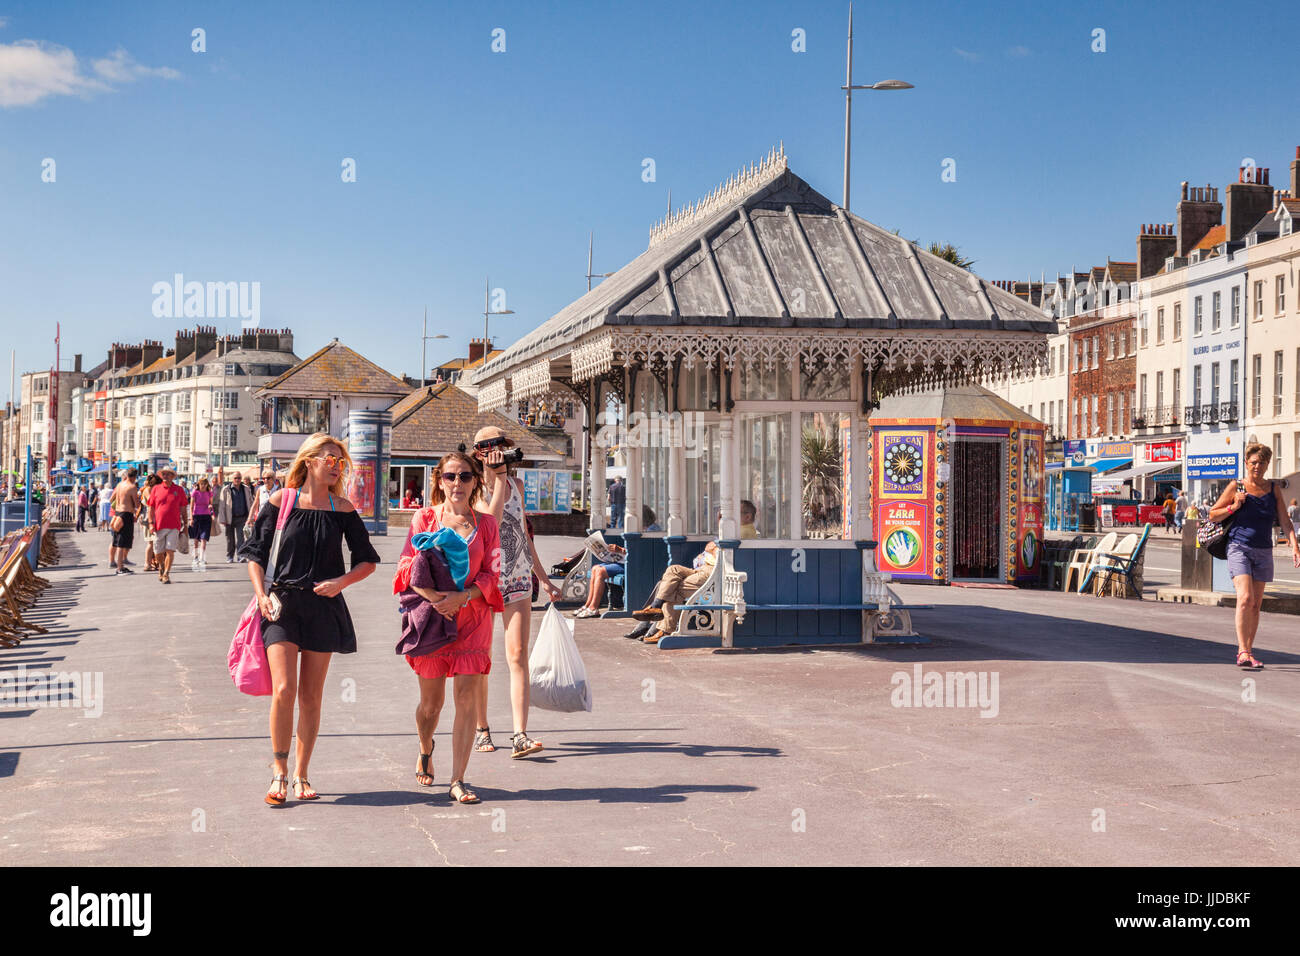 2 Juillet 2017 : Weymouth, Dorset, England, UK - Les visiteurs sur la promenade sur une chaude journée d'été en juillet. Banque D'Images